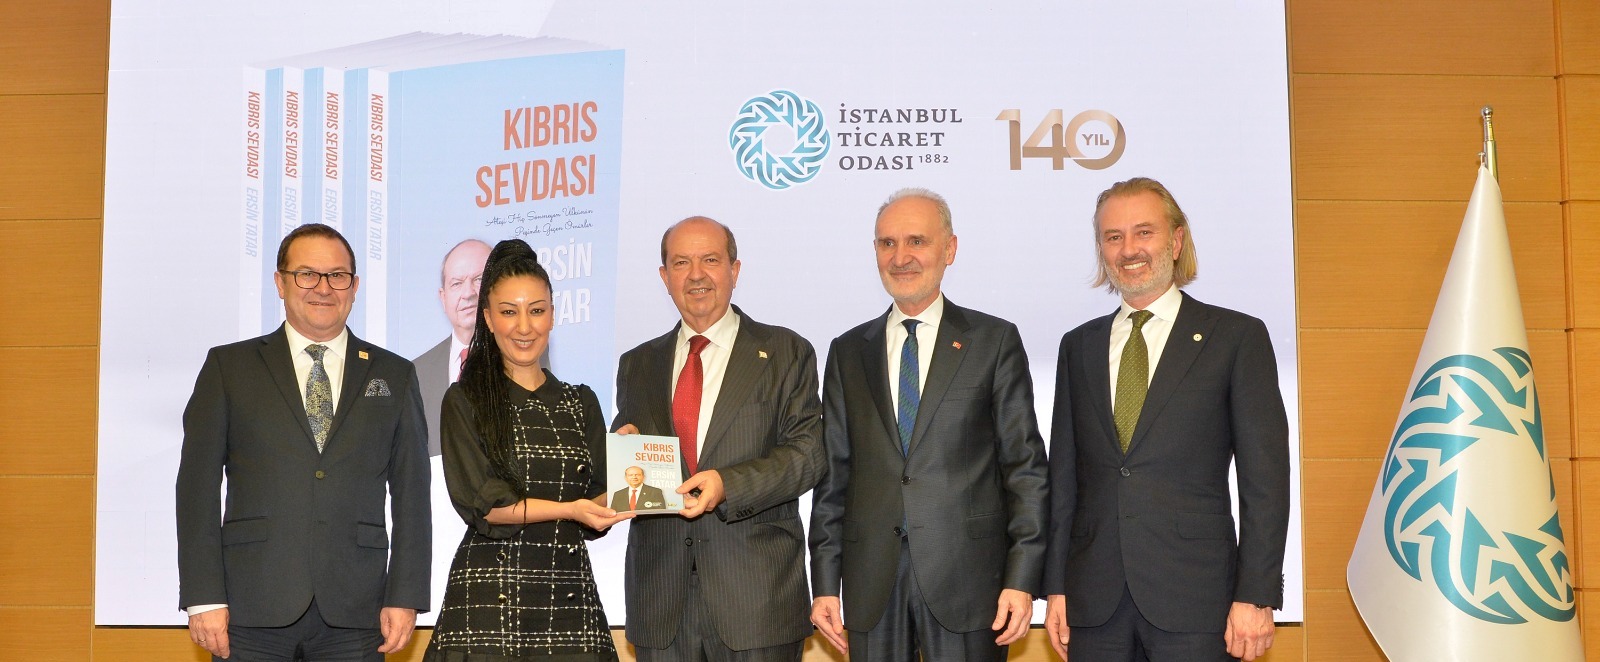 Cumhurbaşkabı Tatar,  “Kıbrıs Sevdası-Ateşi Hiç Sönmeyen Ülkünün Peşinde Geçen Ömürler ve Ersin Tatar” adlı kitabın tanıtım etkinliğine katıldı